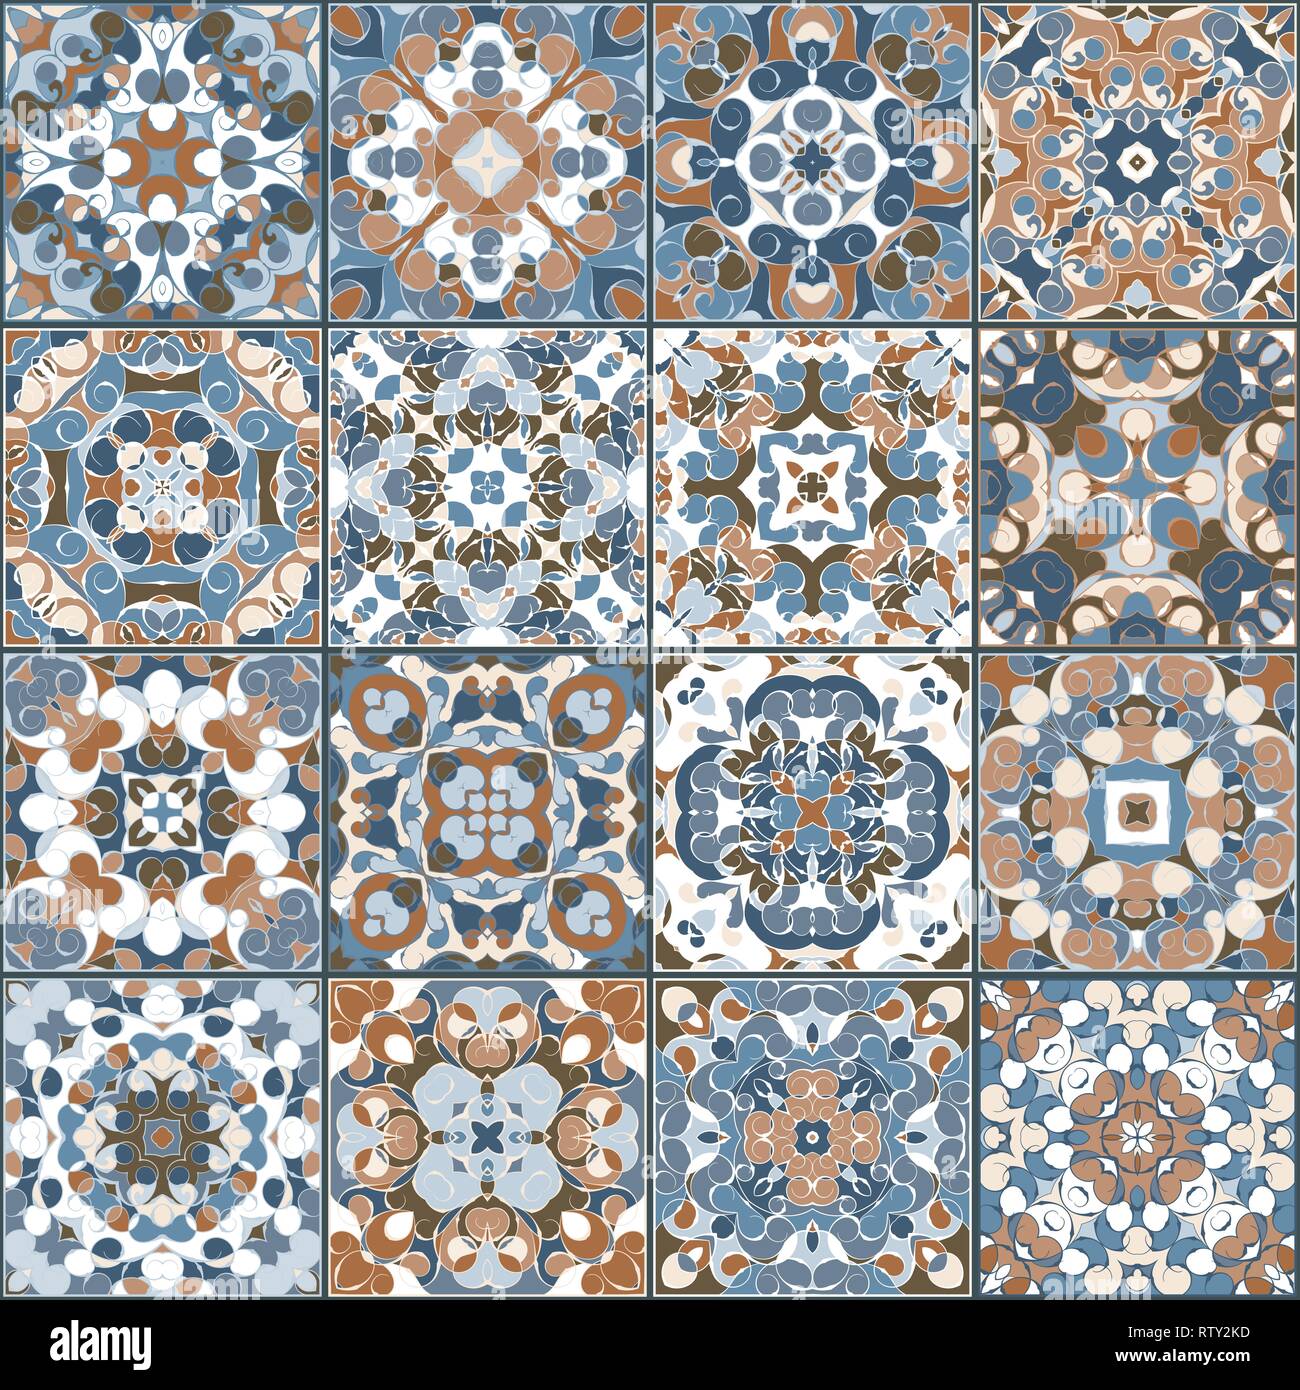 Eine Sammlung von Keramikfliesen in Blau und Braun retro Farben. Eine Reihe von quadratischen Muster im ethnischen Stil. Vector Illustration. Stock Vektor